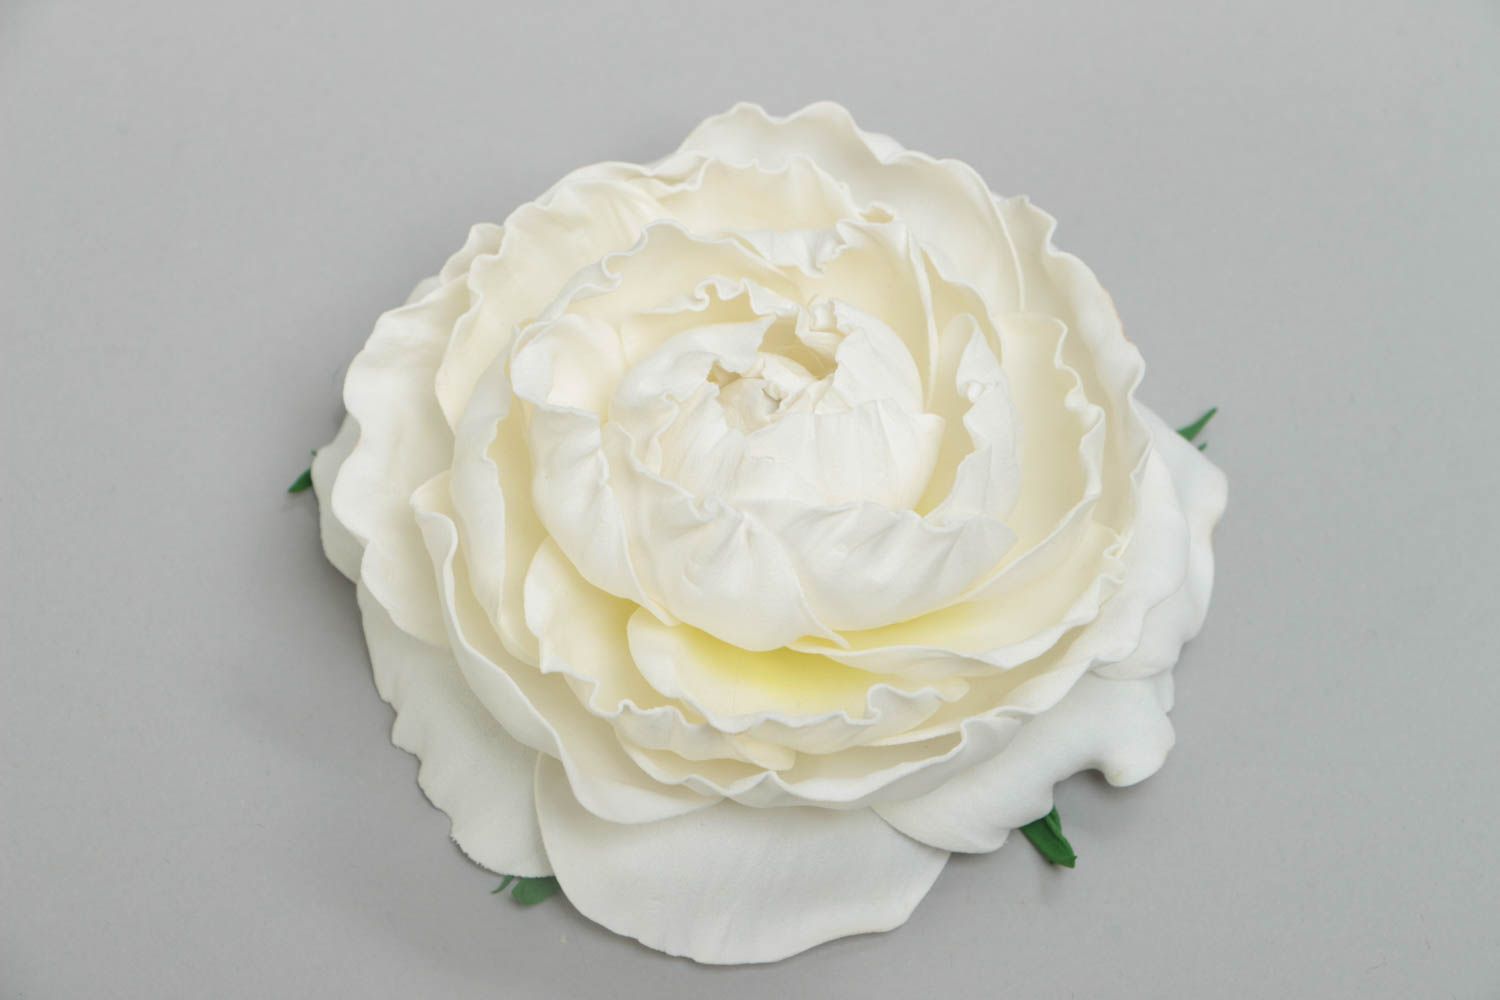 Объемная заготовка под брошь в виде цветка из фоамирана белая роза ручной работы фото 2